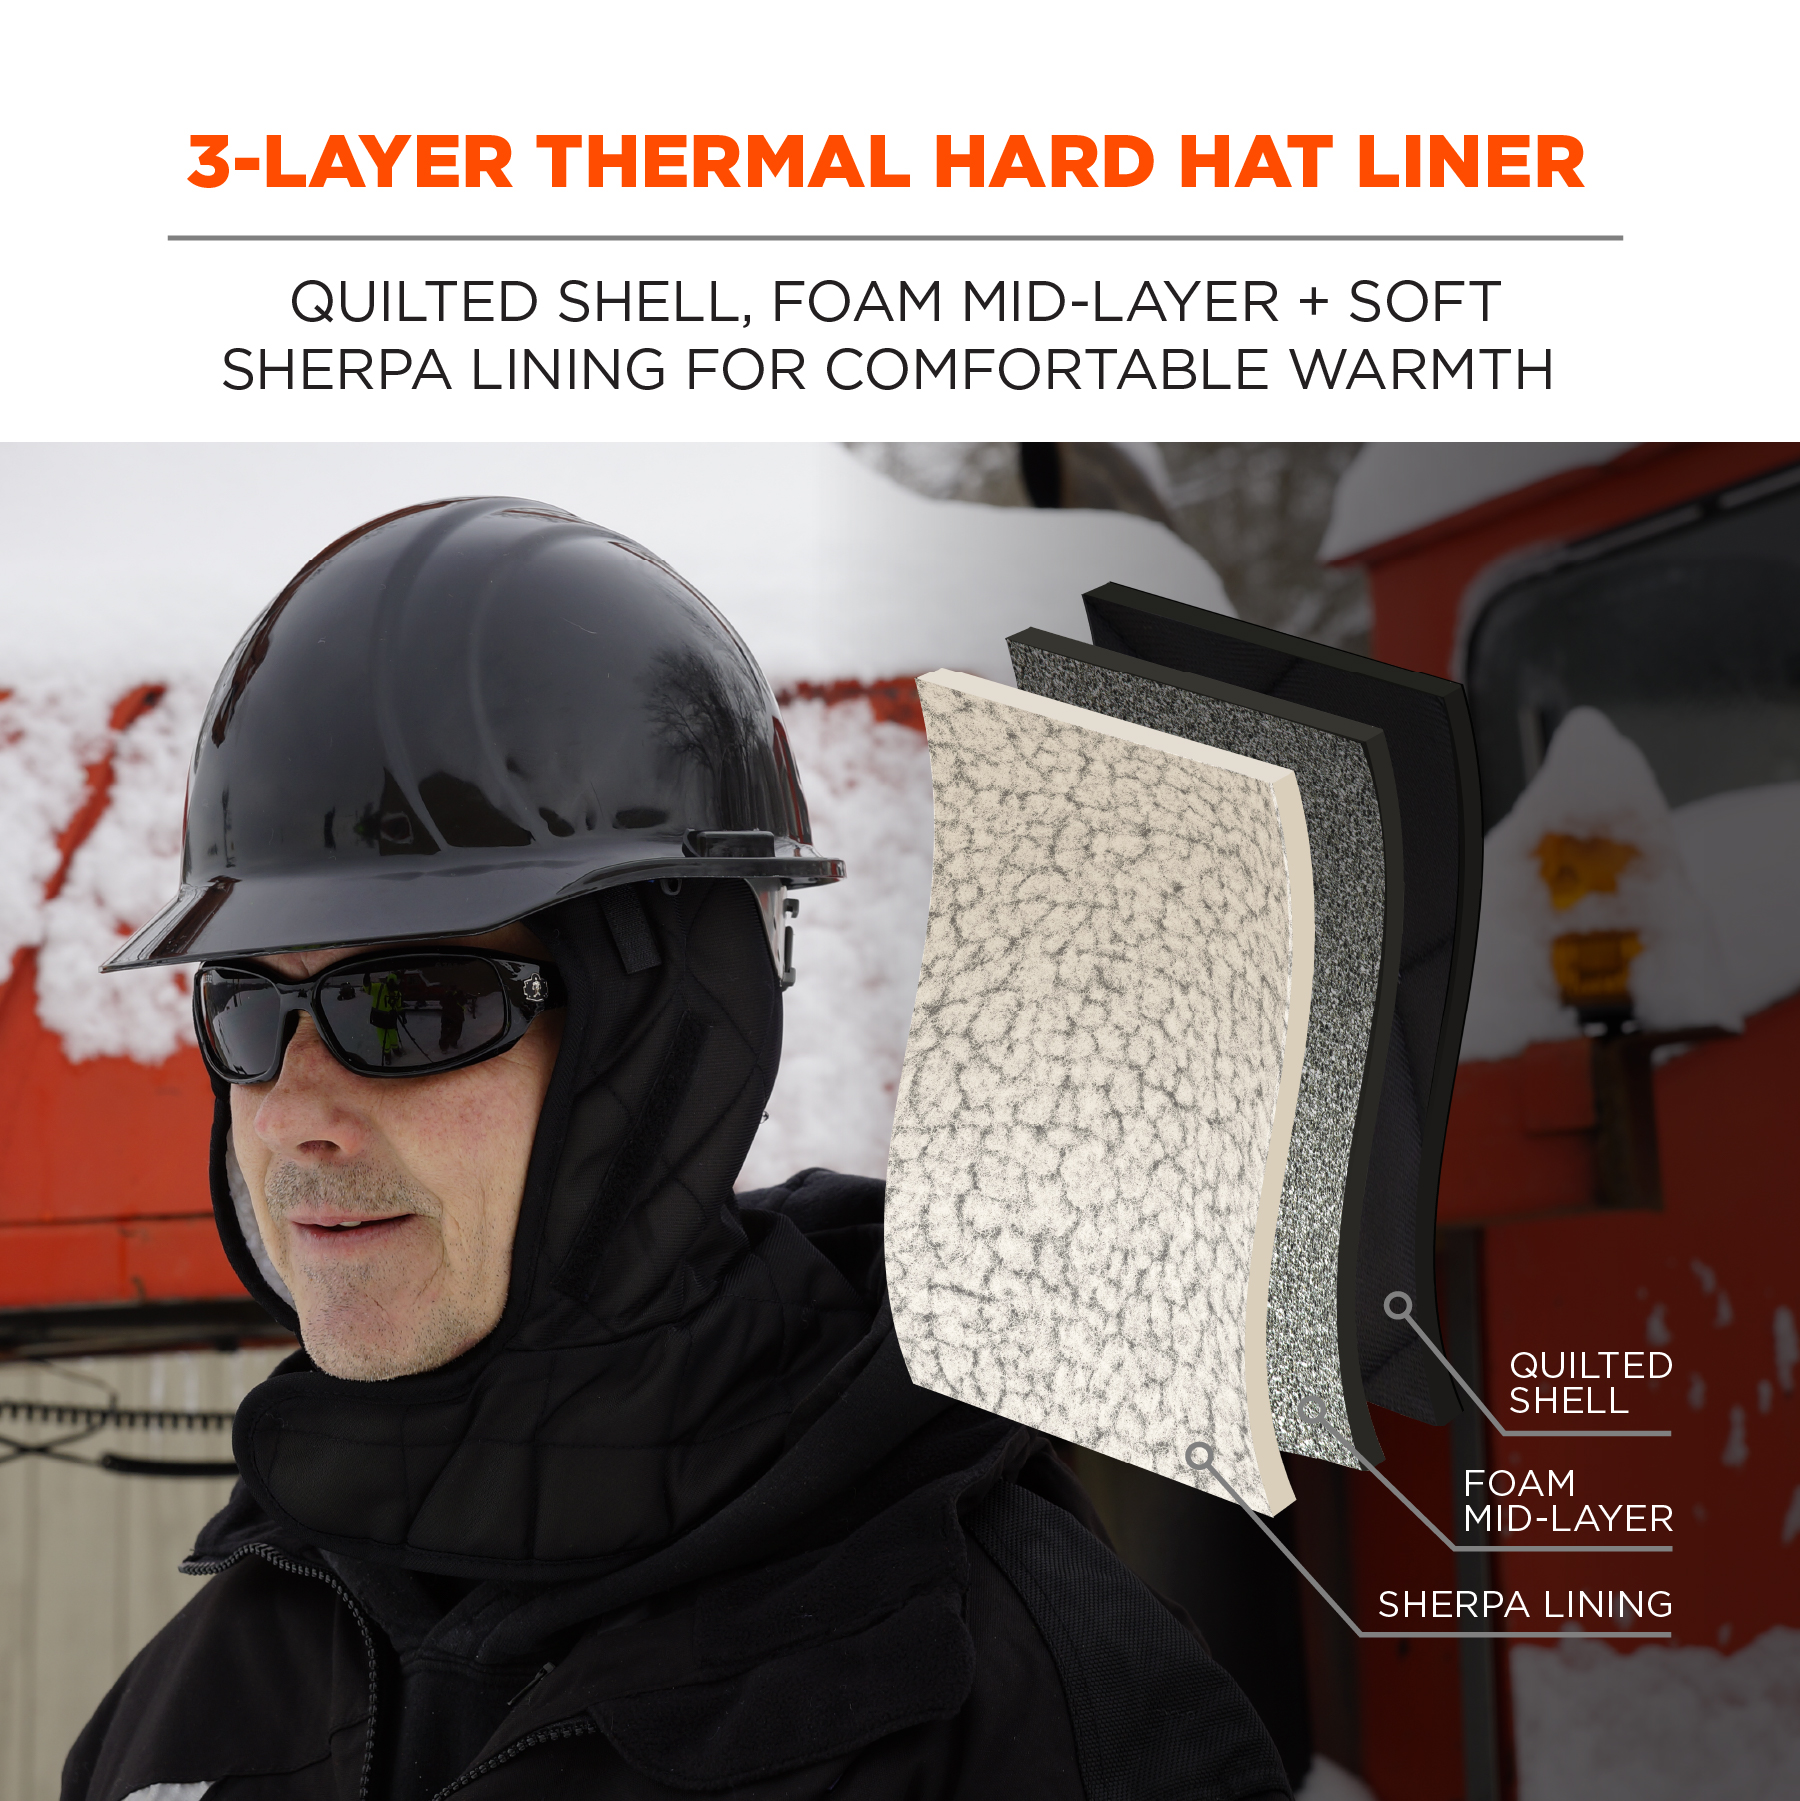 https://www.ergodyne.com/sites/default/files/product-images/16952-6952-hard-hat-winter-liner-3-layer-thermal-hard-hat-liner.jpg